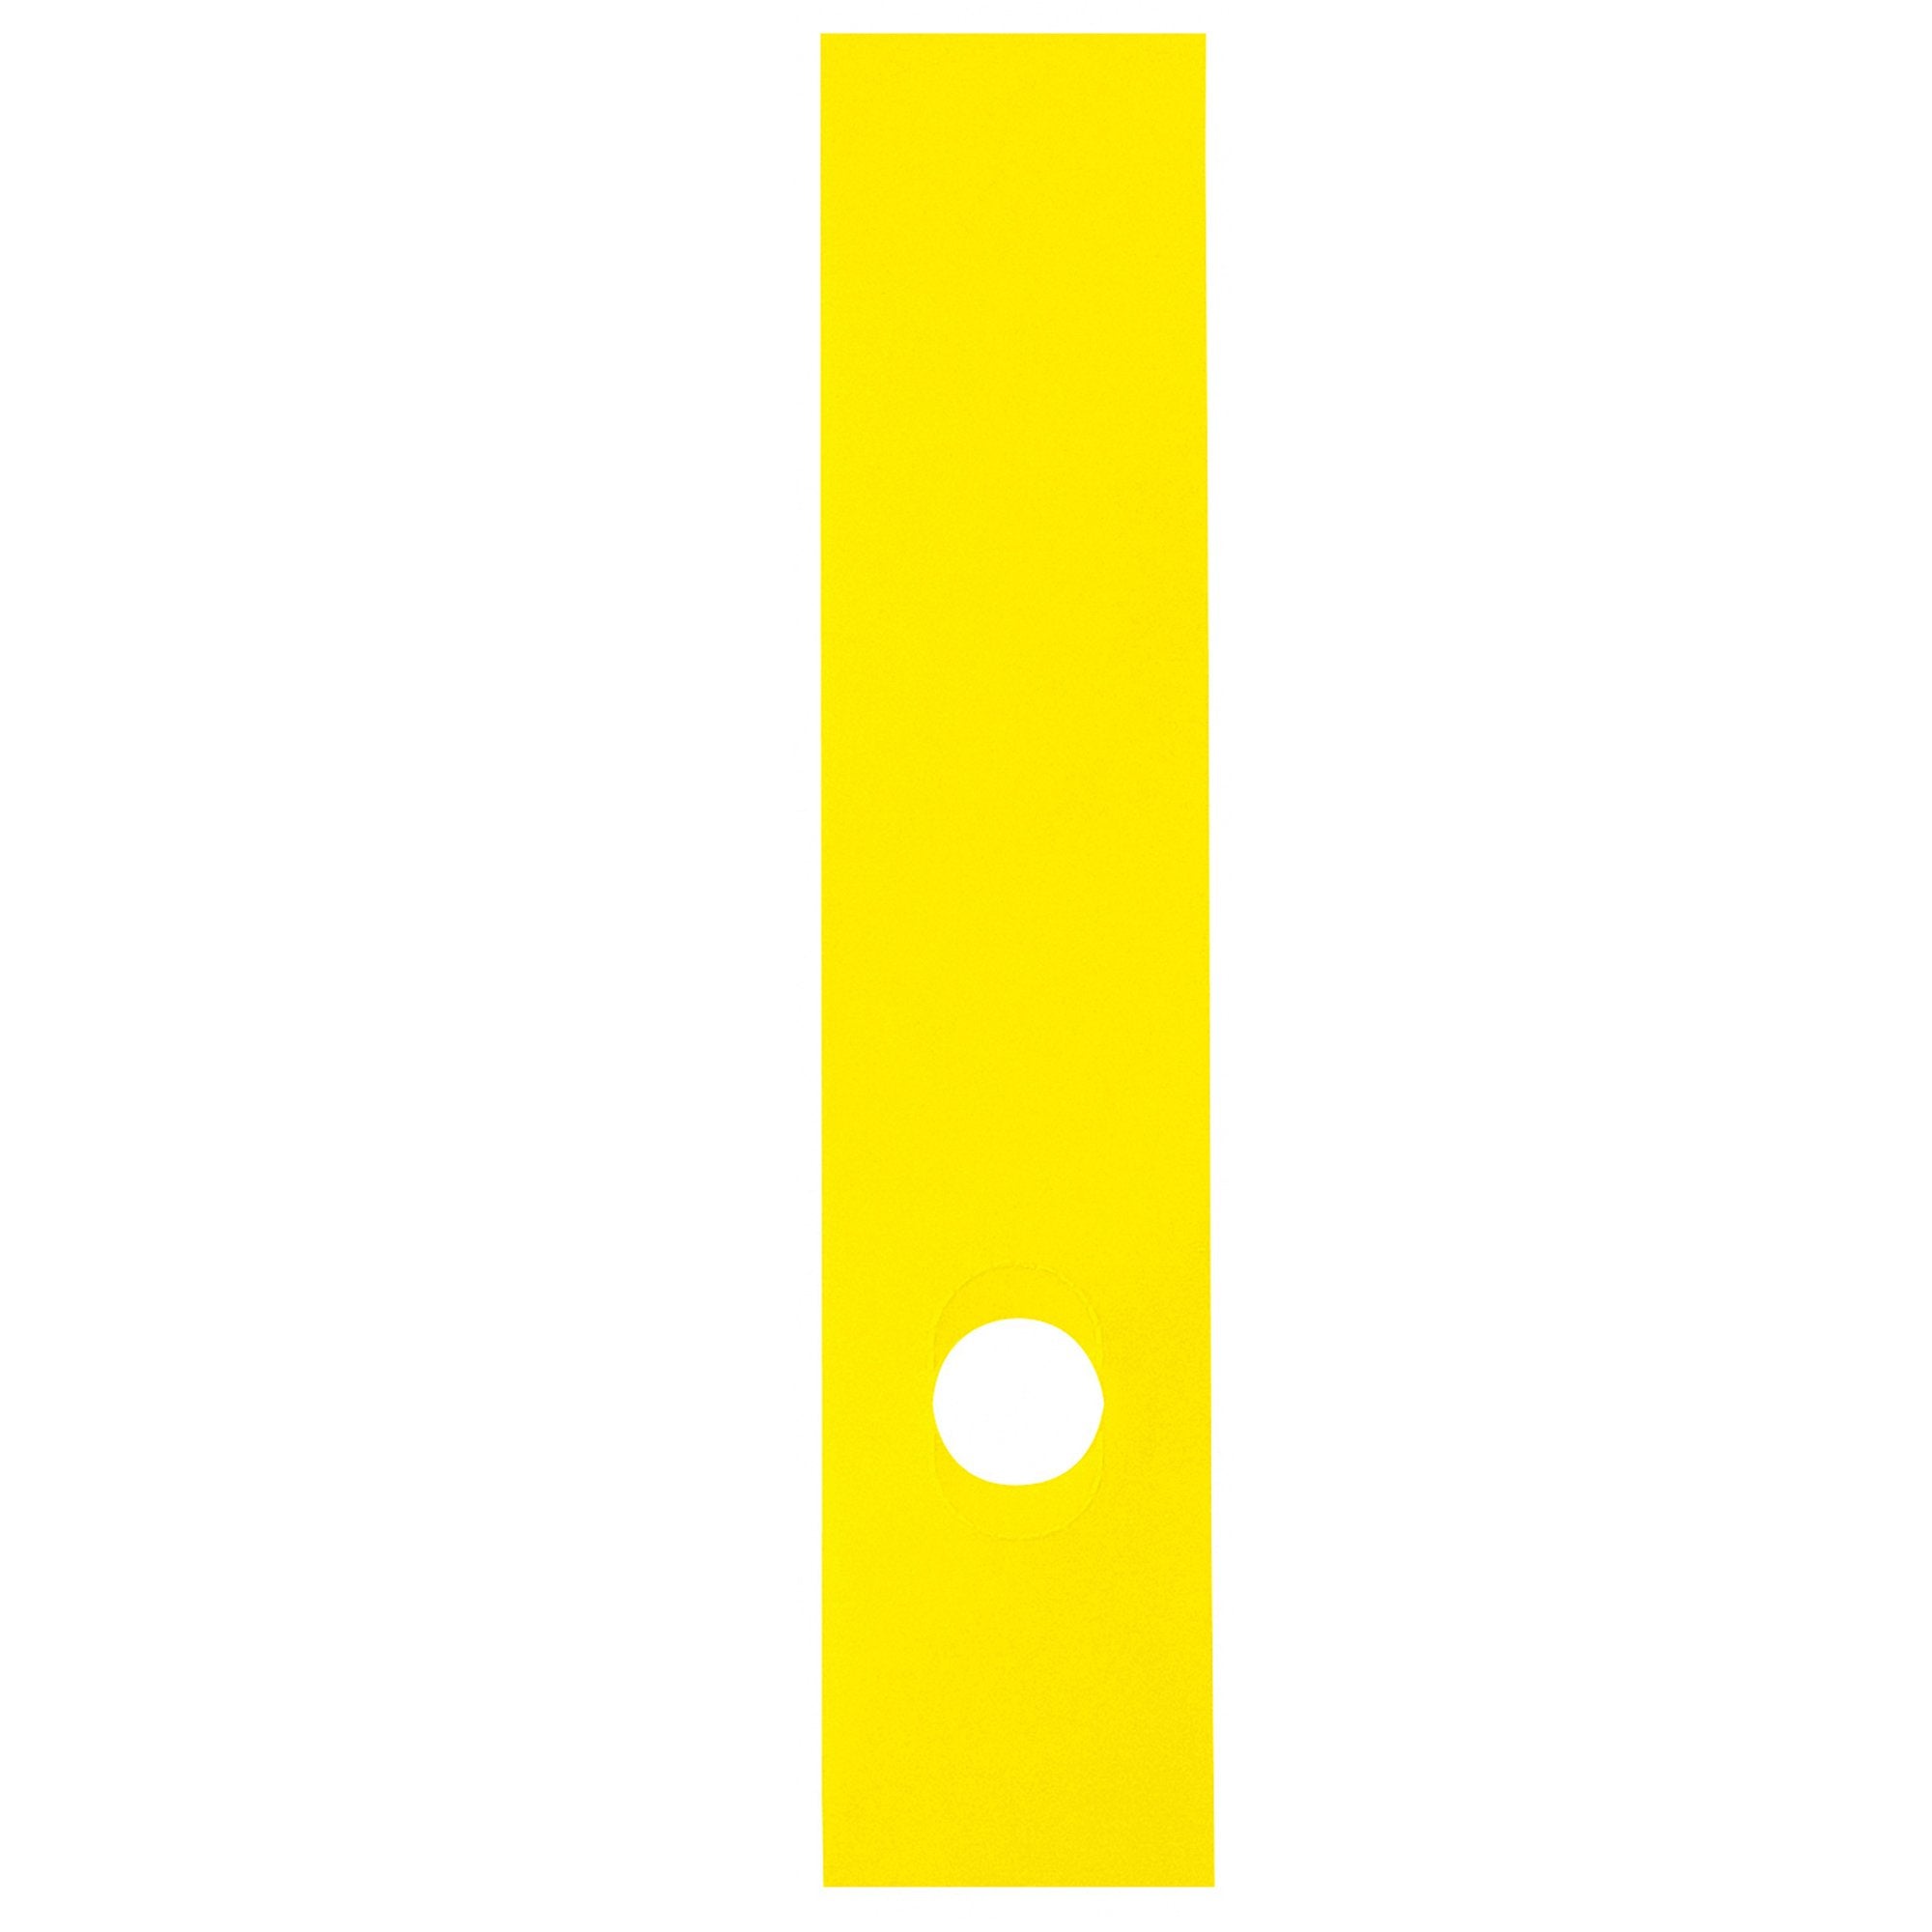 sei-rota-busta-10-copridorso-cdr-p-pvc-adesivi-giallo-7x34-5cm-rota